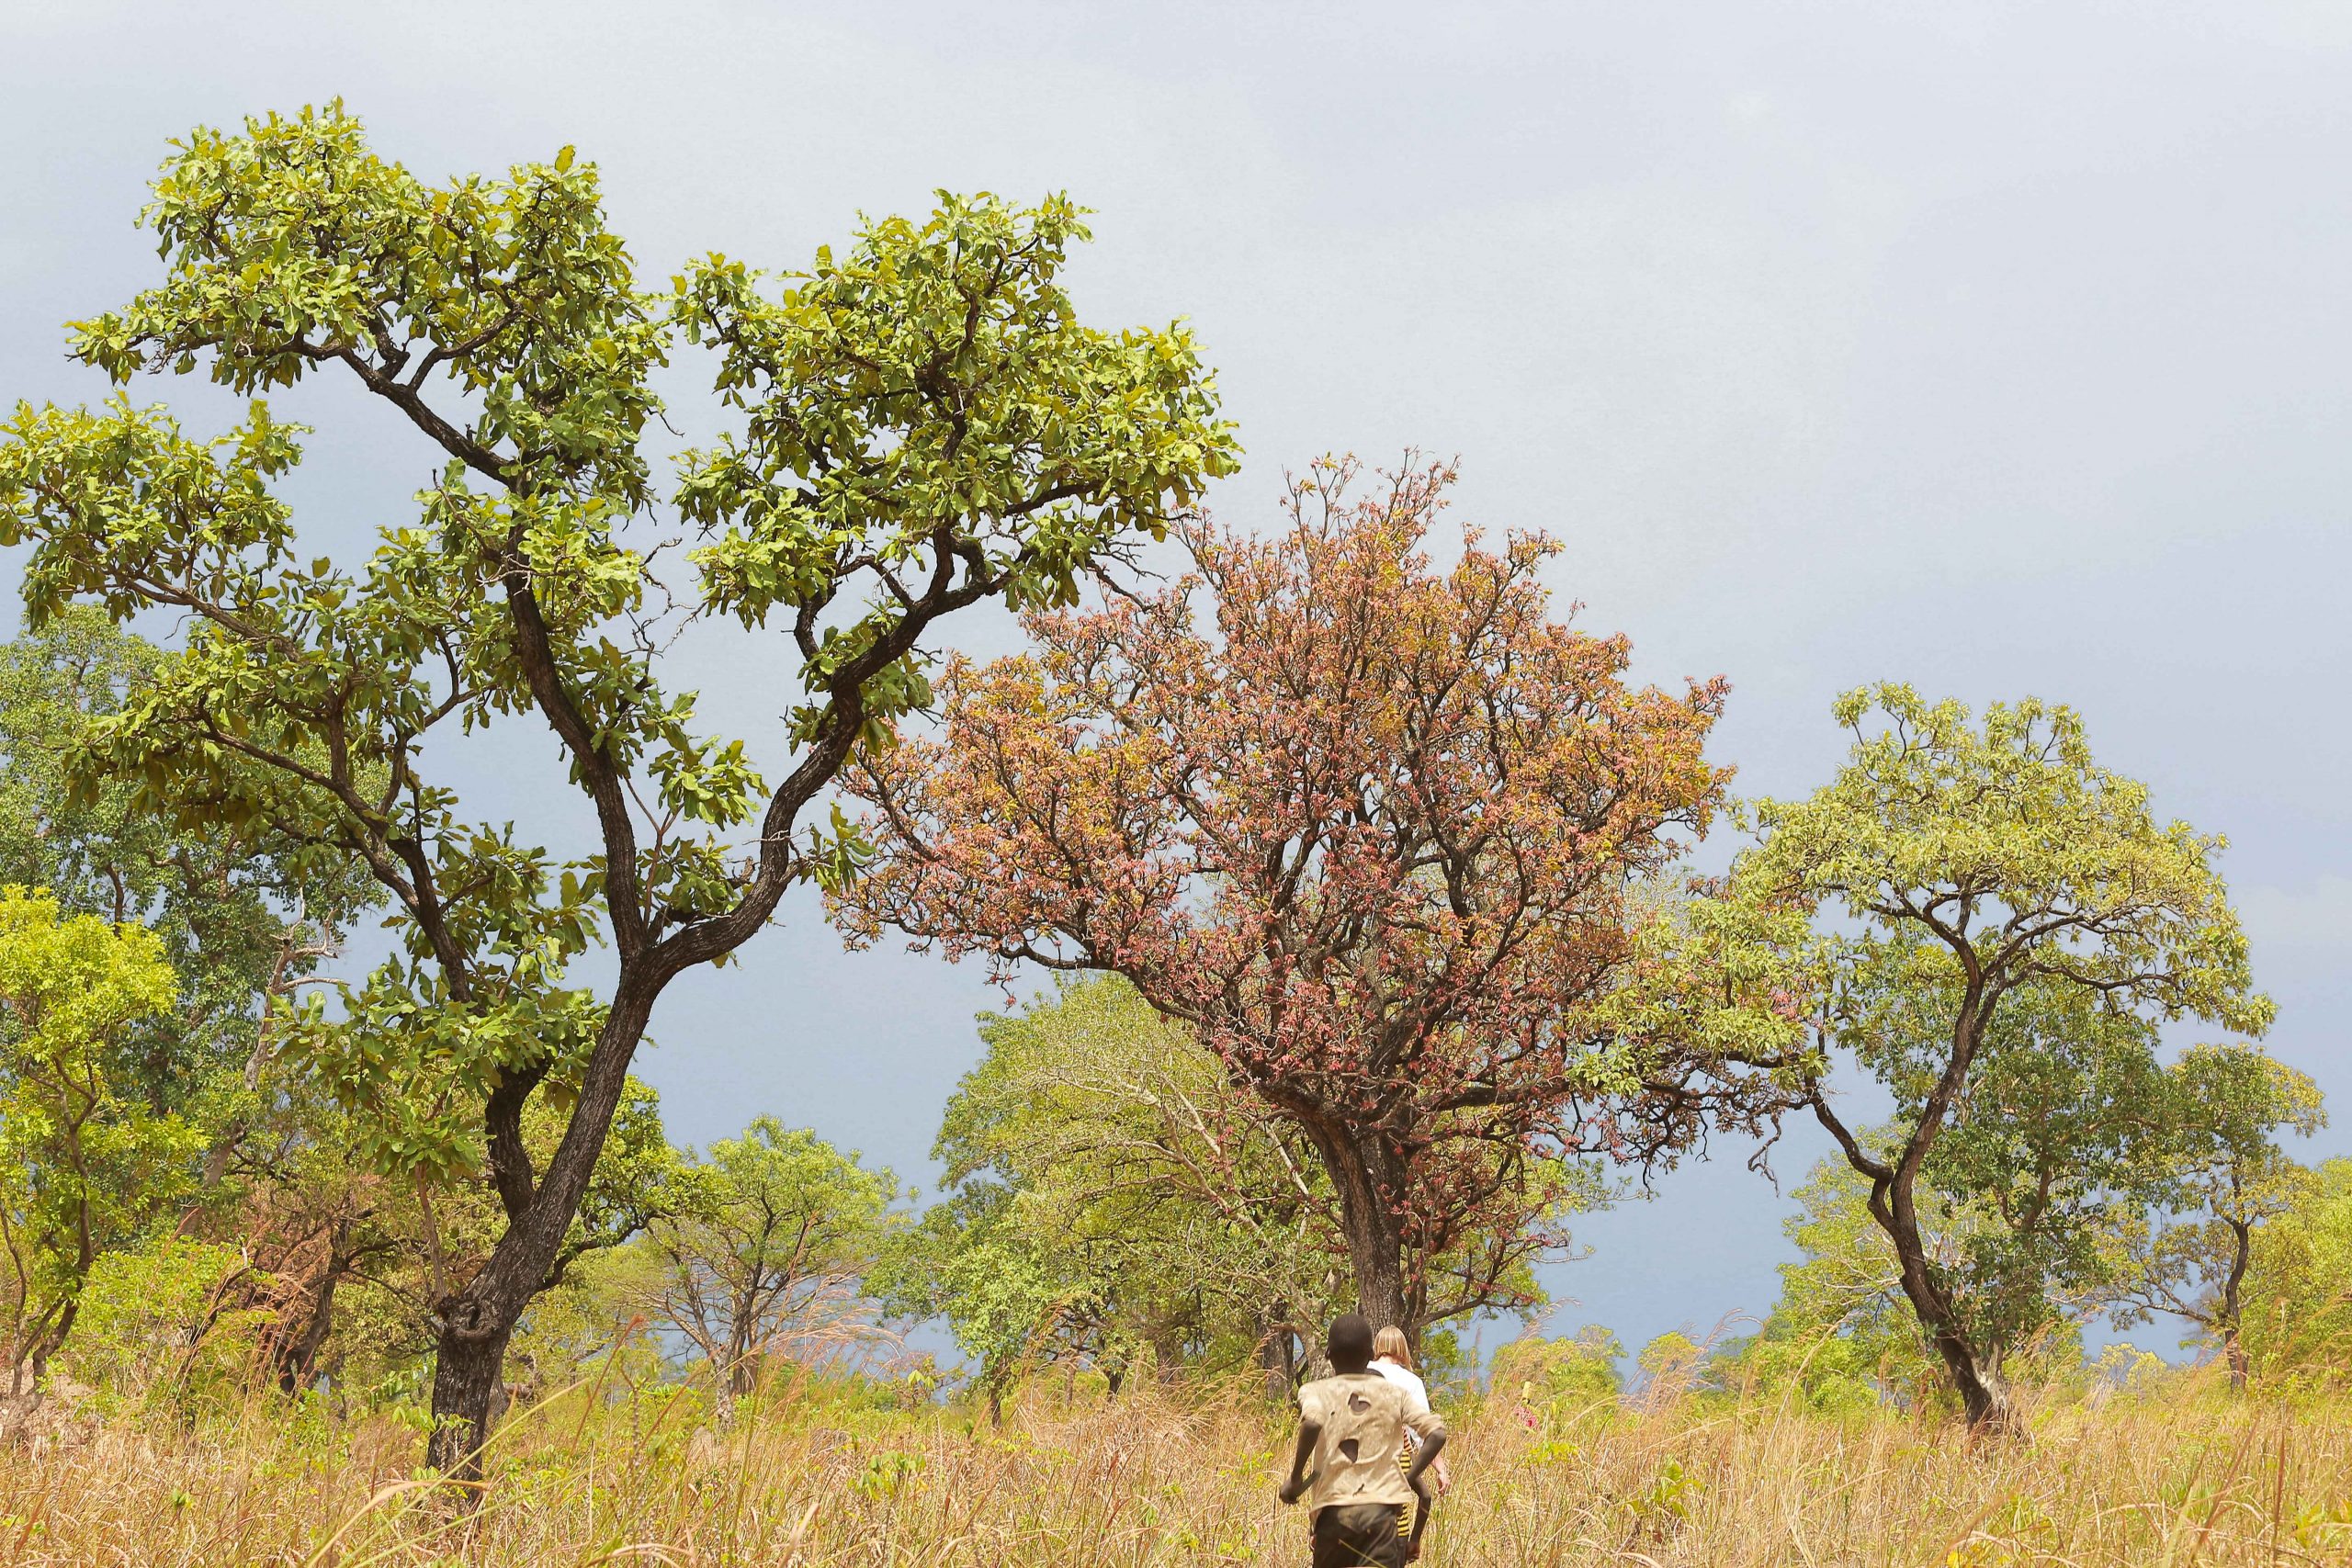 Wild nilotica trees in north uganda